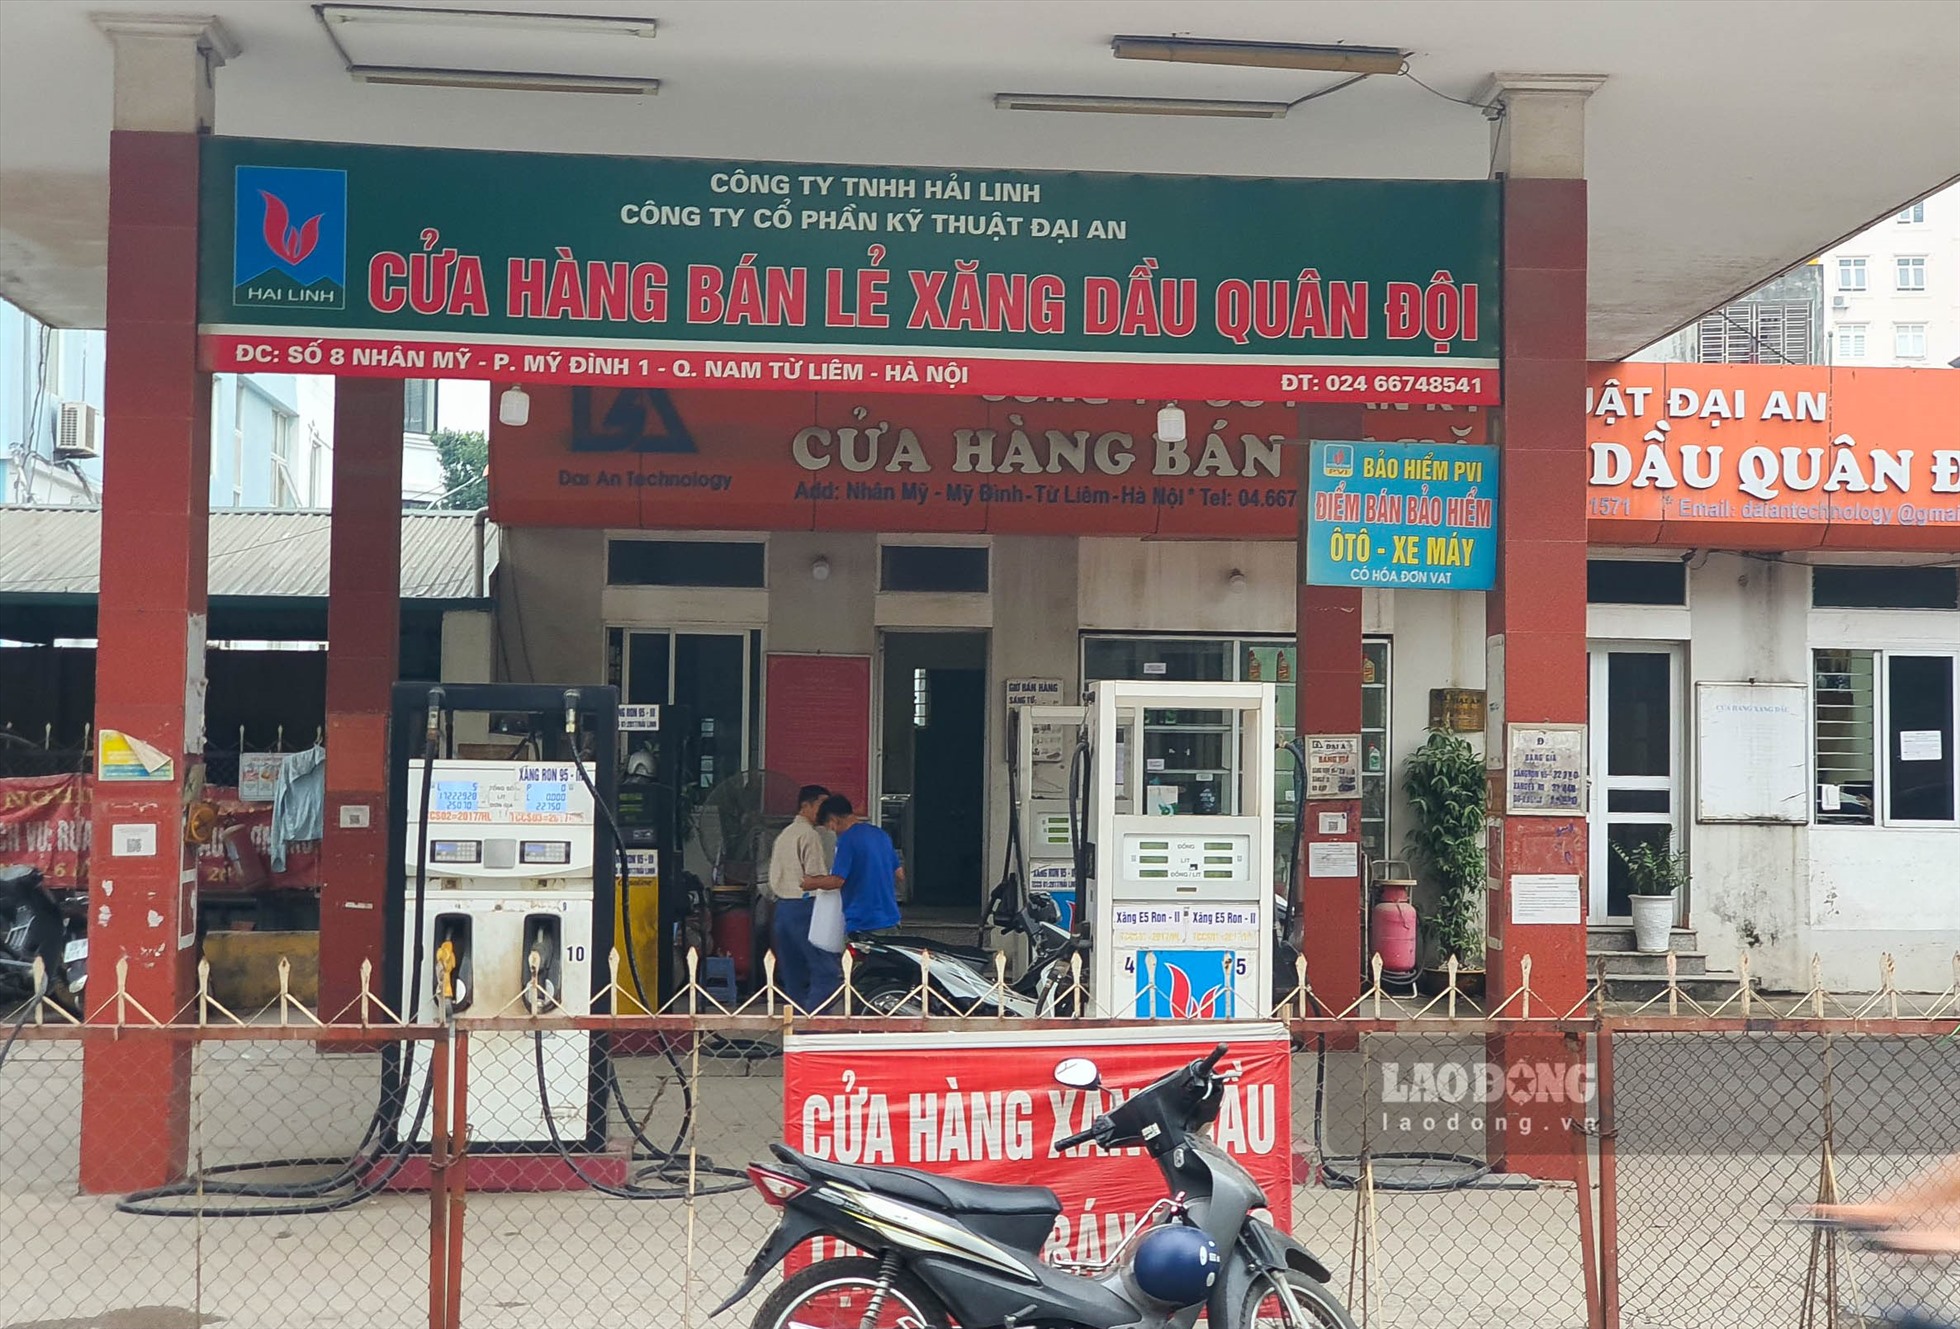 Hình ảnh ghi nhận tại 1 cửa hàng xăng dầu tại quận Nam Từ Liêm - Hà Nội.